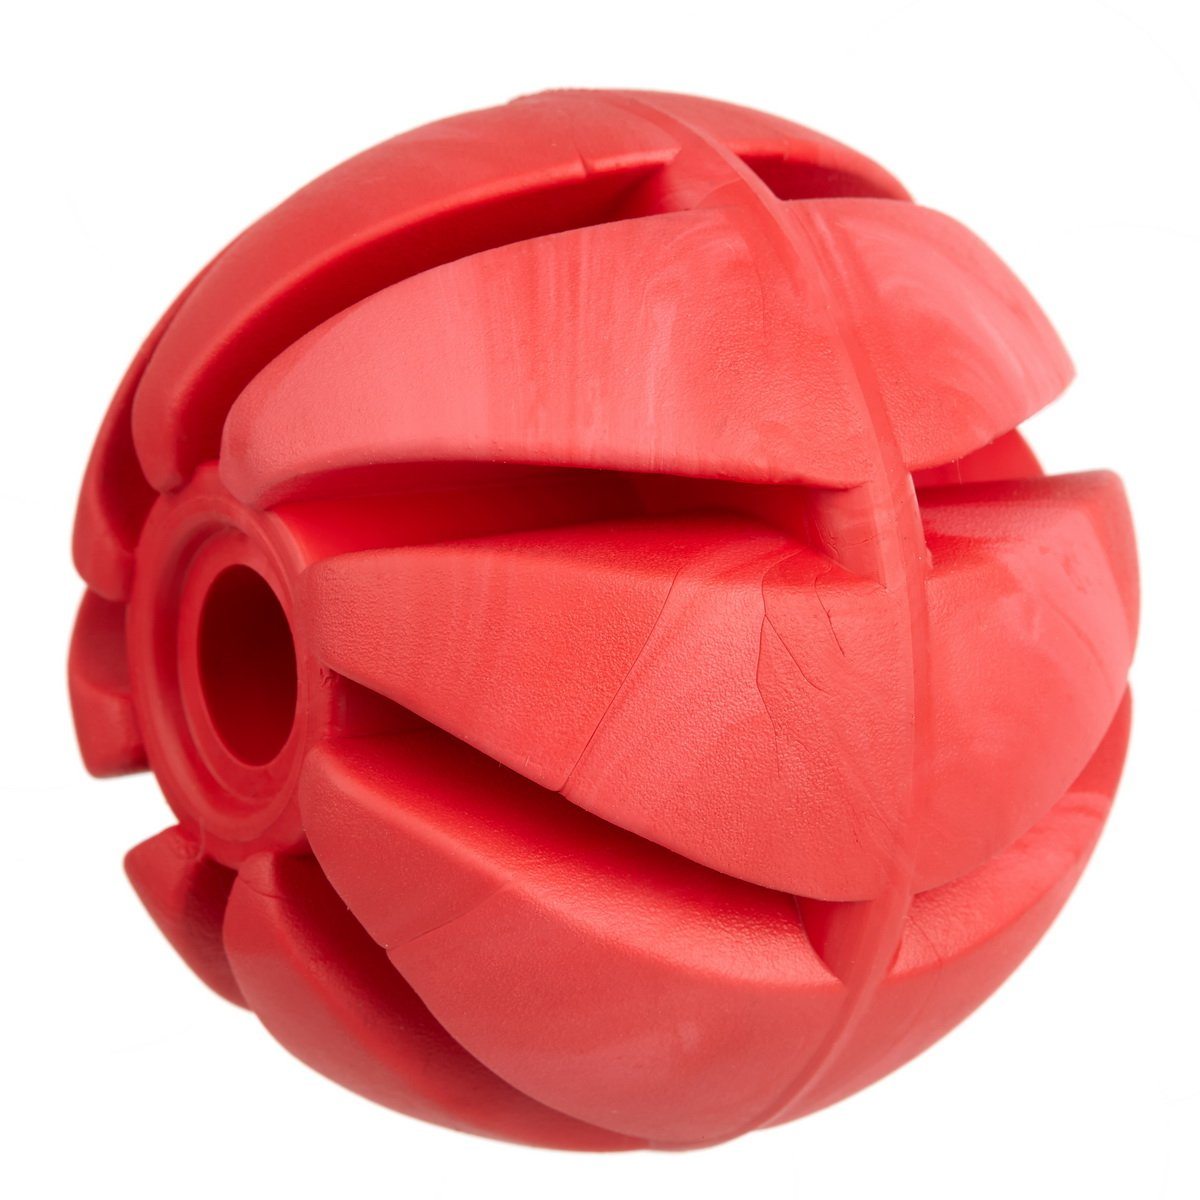 Dogline Rubber Dog Spiral Ball Toy